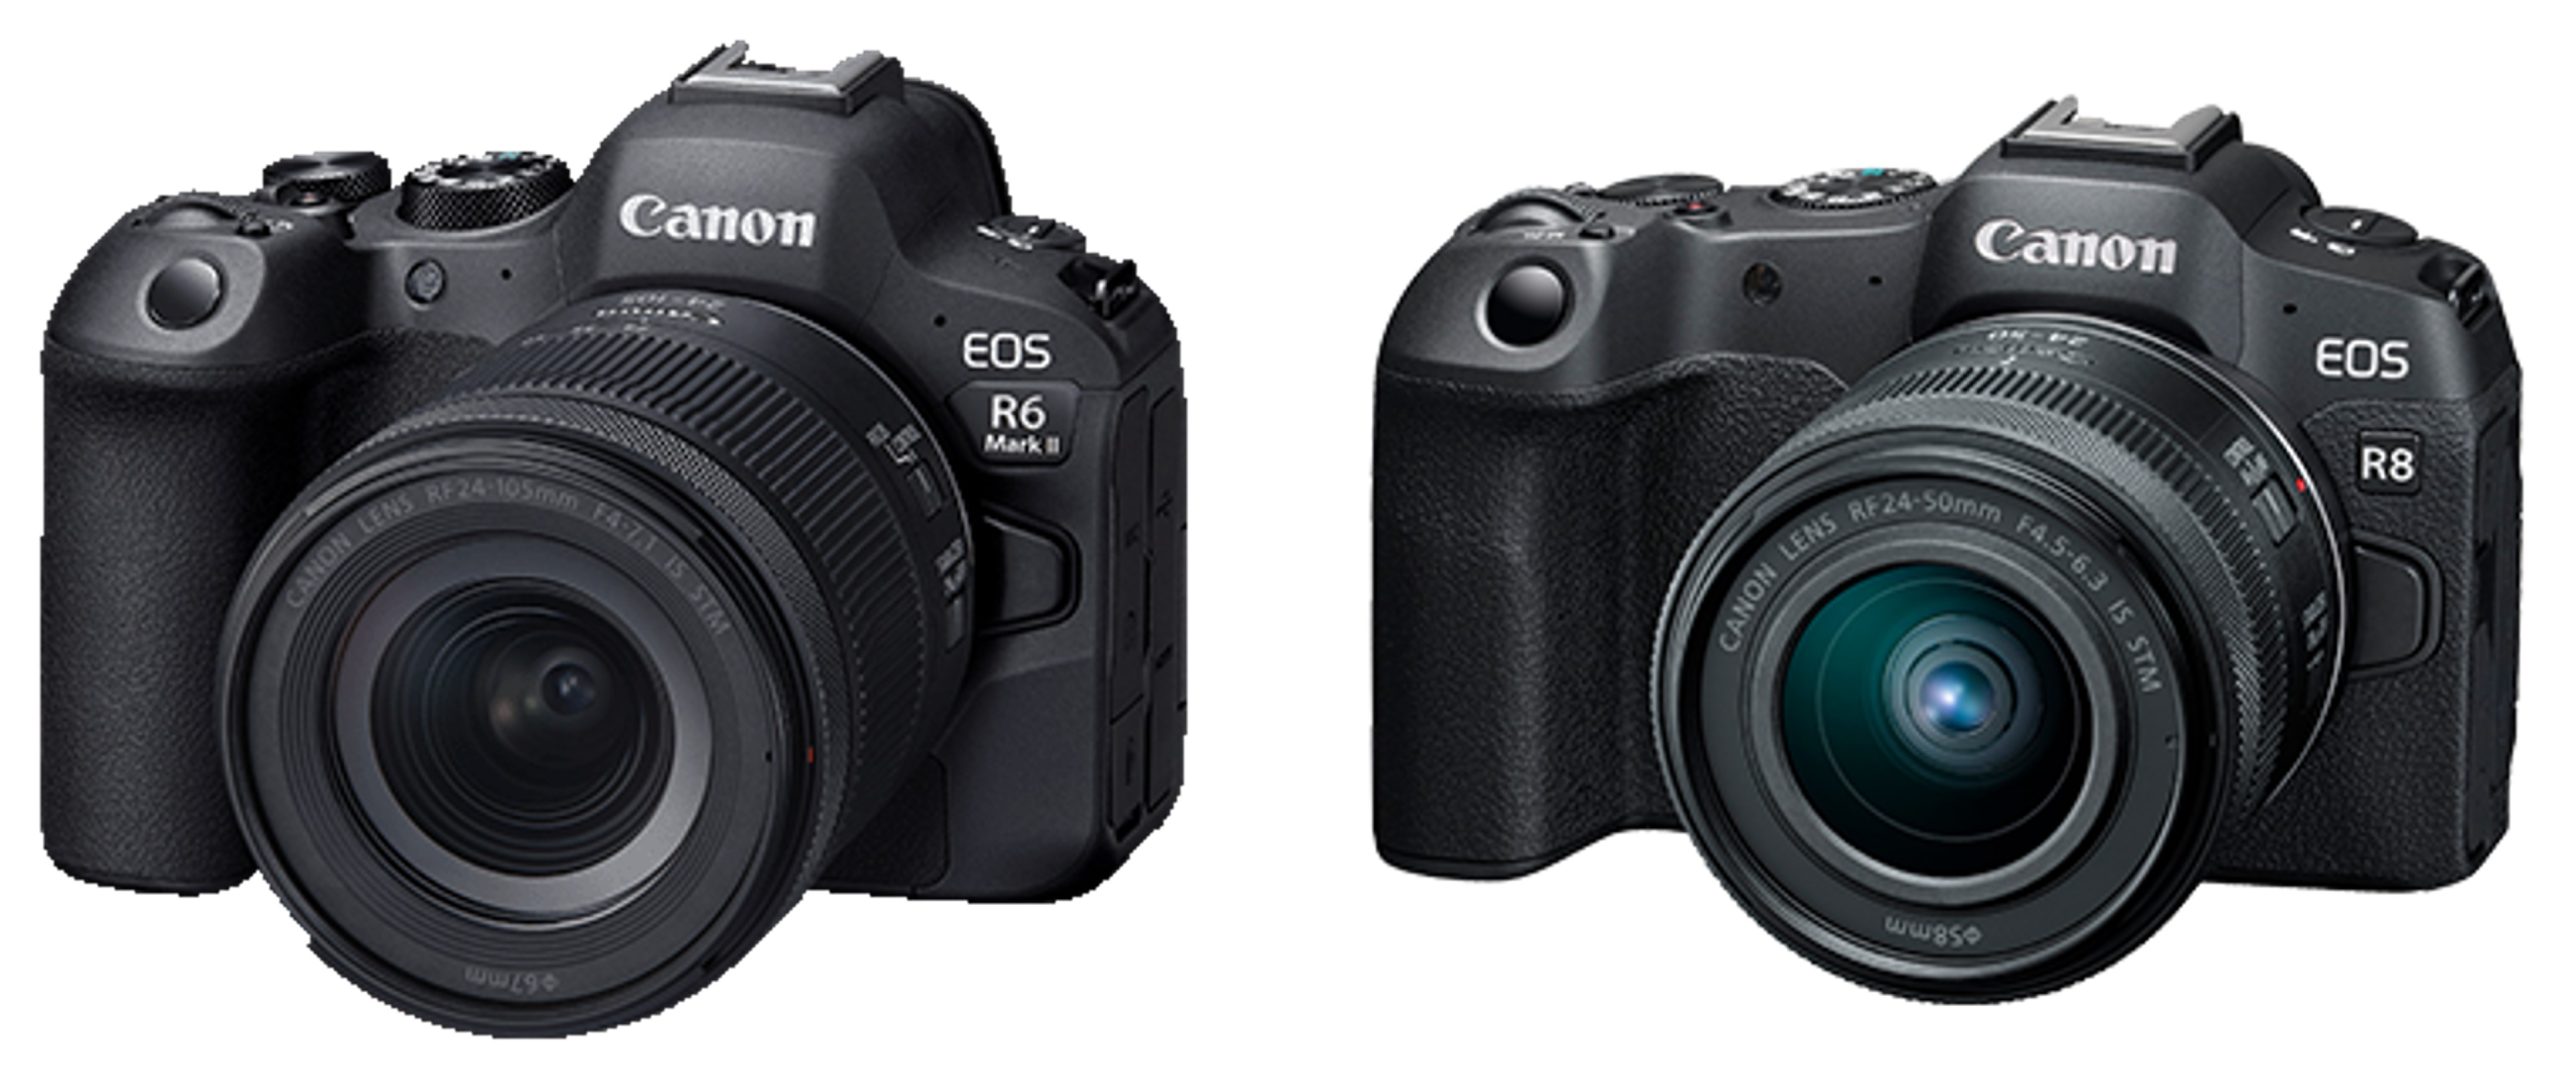 Canon EOS R62 對比 Canon EOS R8